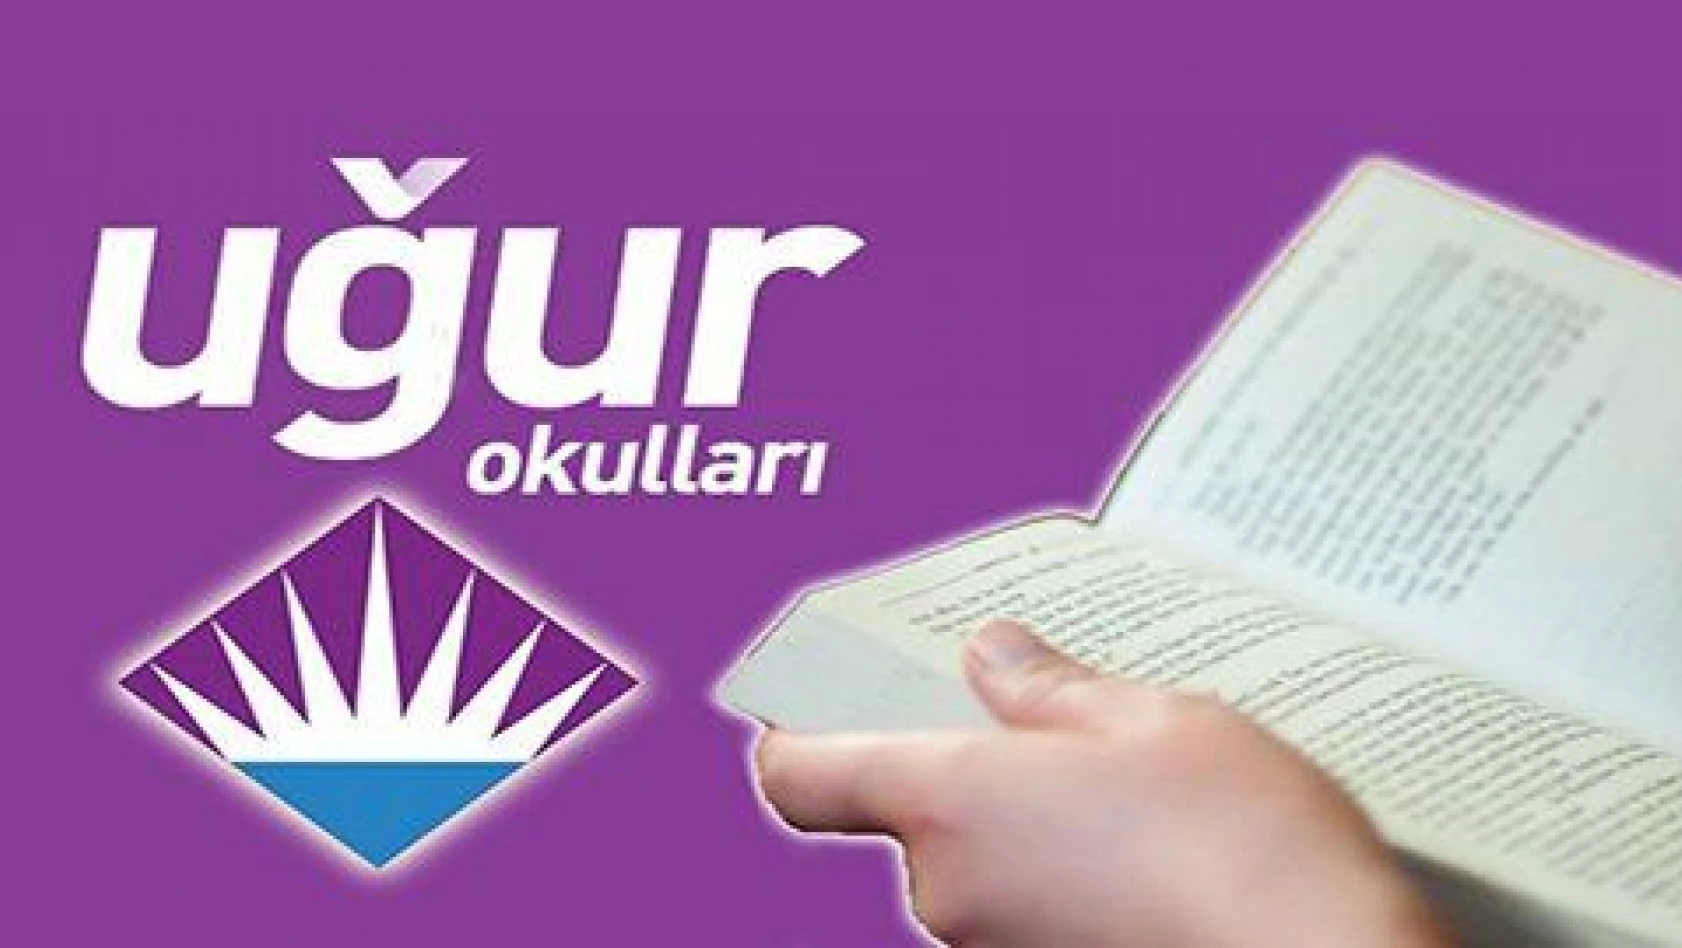 KAYSERİ UĞUR OKULLARI'NDAN KAYSERİ'DE 6 NOKTADA KİTAP OKUMA ETKİNLİĞİ